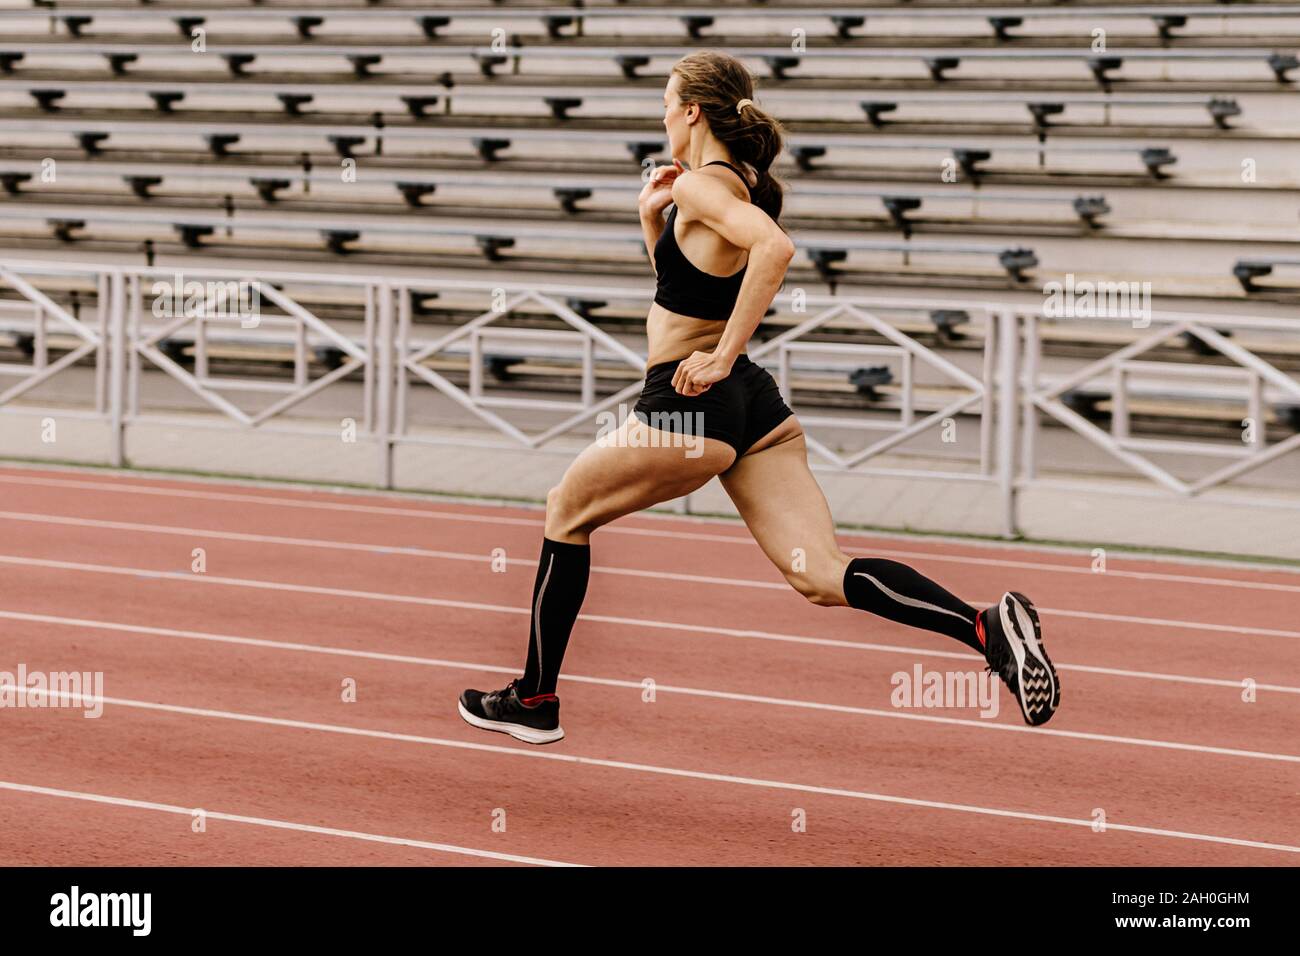 Athlète féminin runner run stadium sur le contexte des sièges de stade Banque D'Images